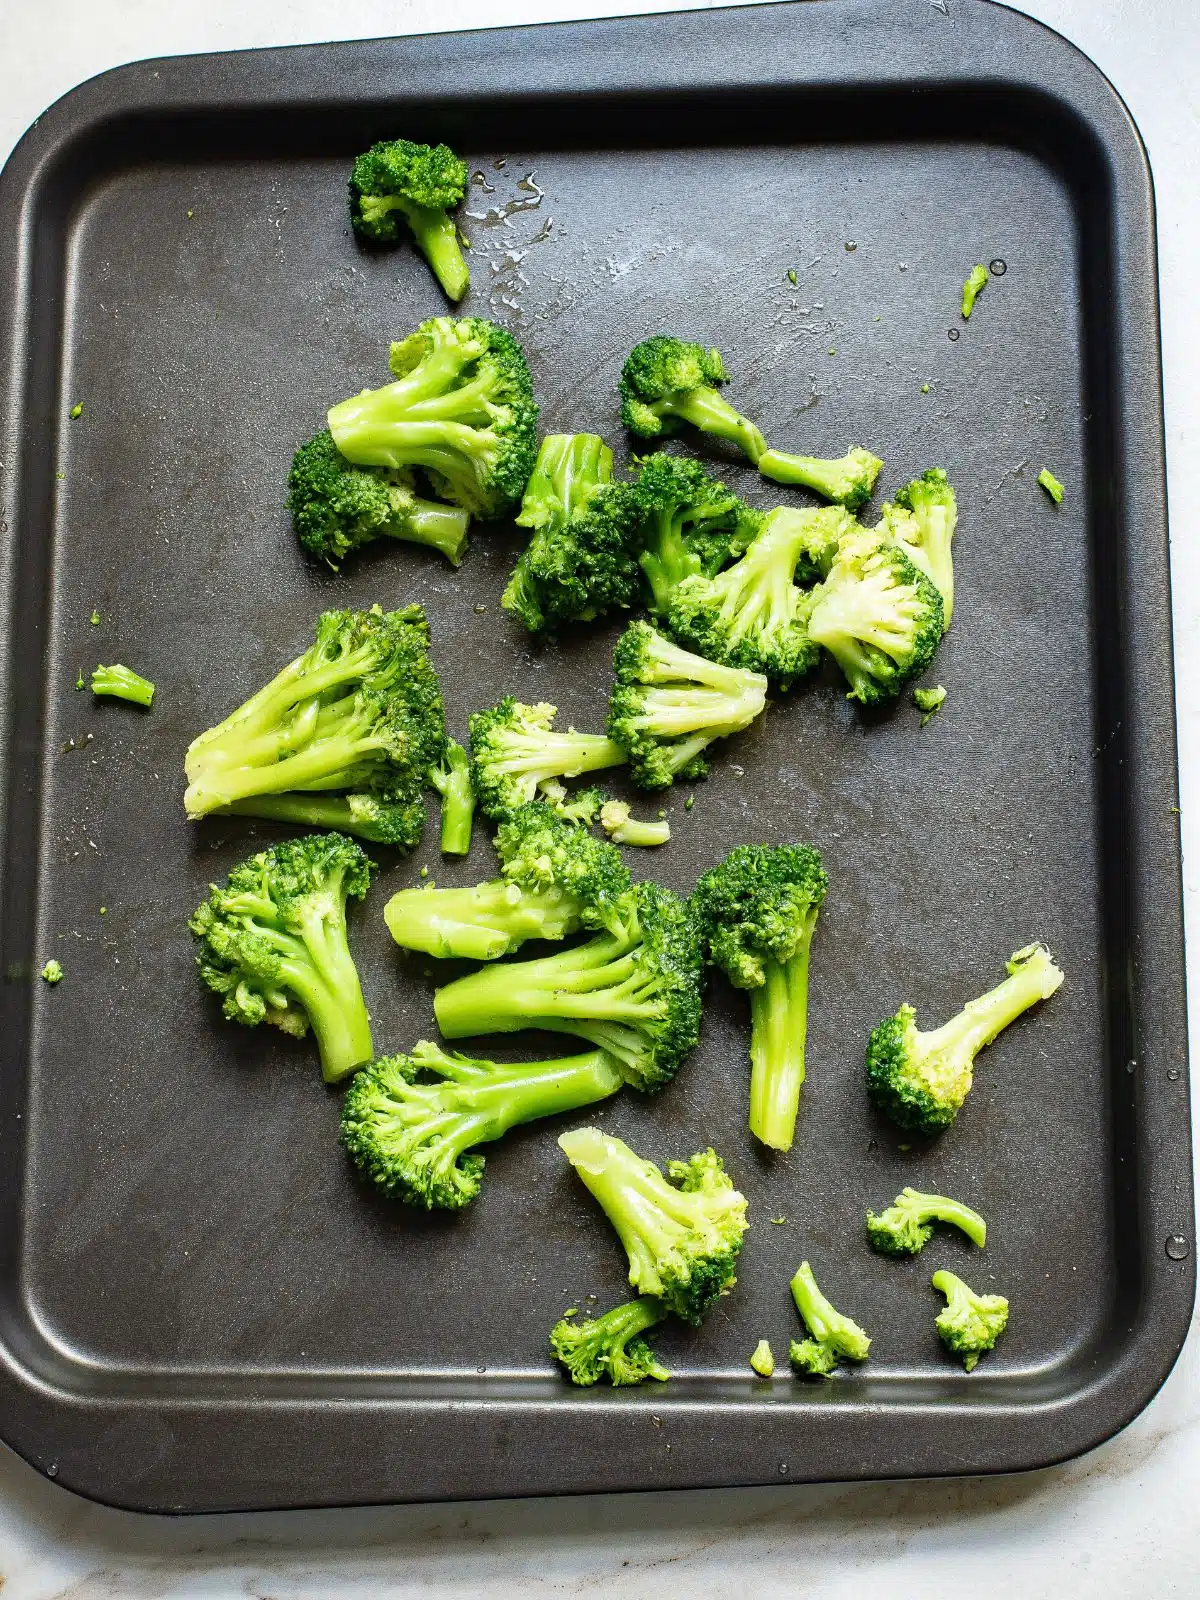 Broccoli on a sheet pan